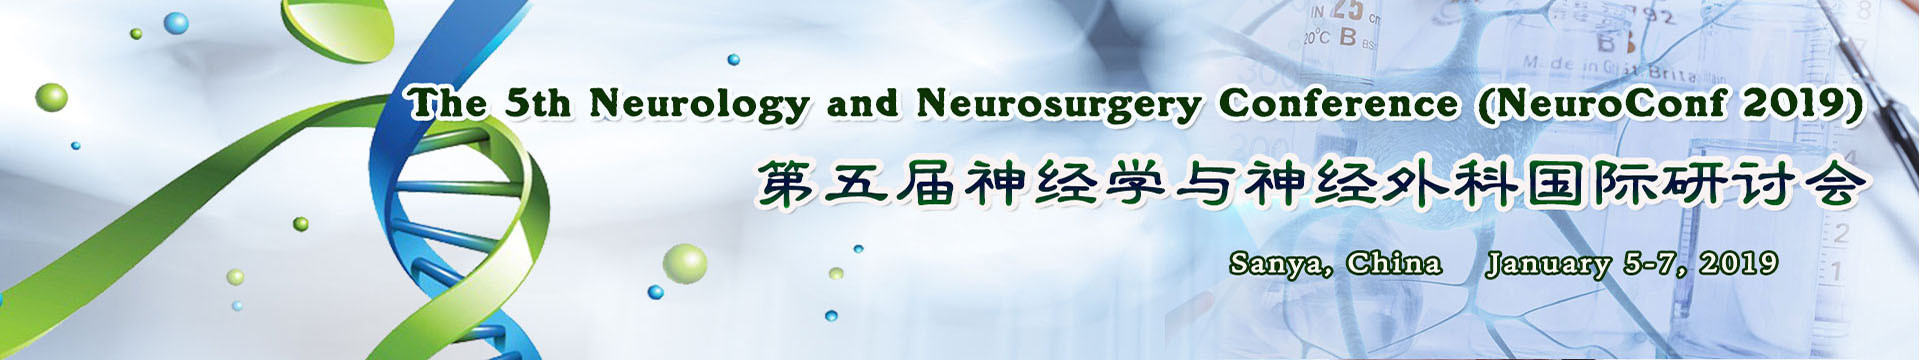 2019第五届神经学与神经外科国际研讨会(NeuroConf 2019)